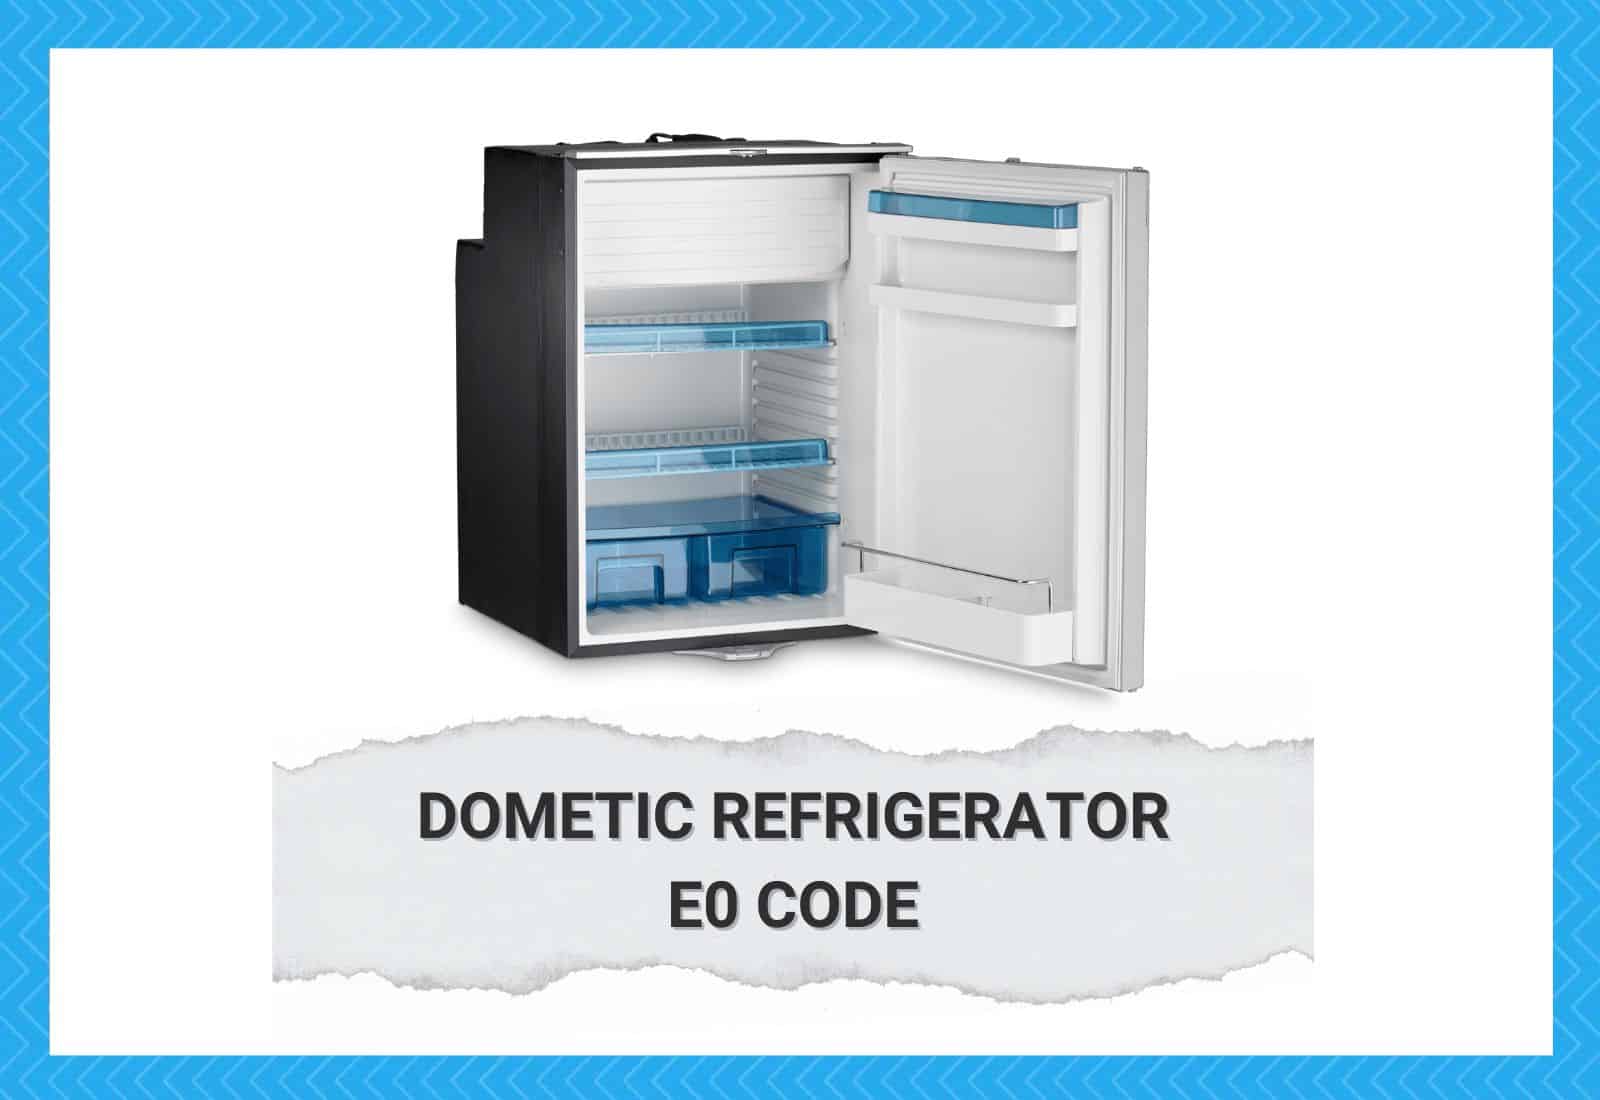 Dometic Refrigerator E0 Code